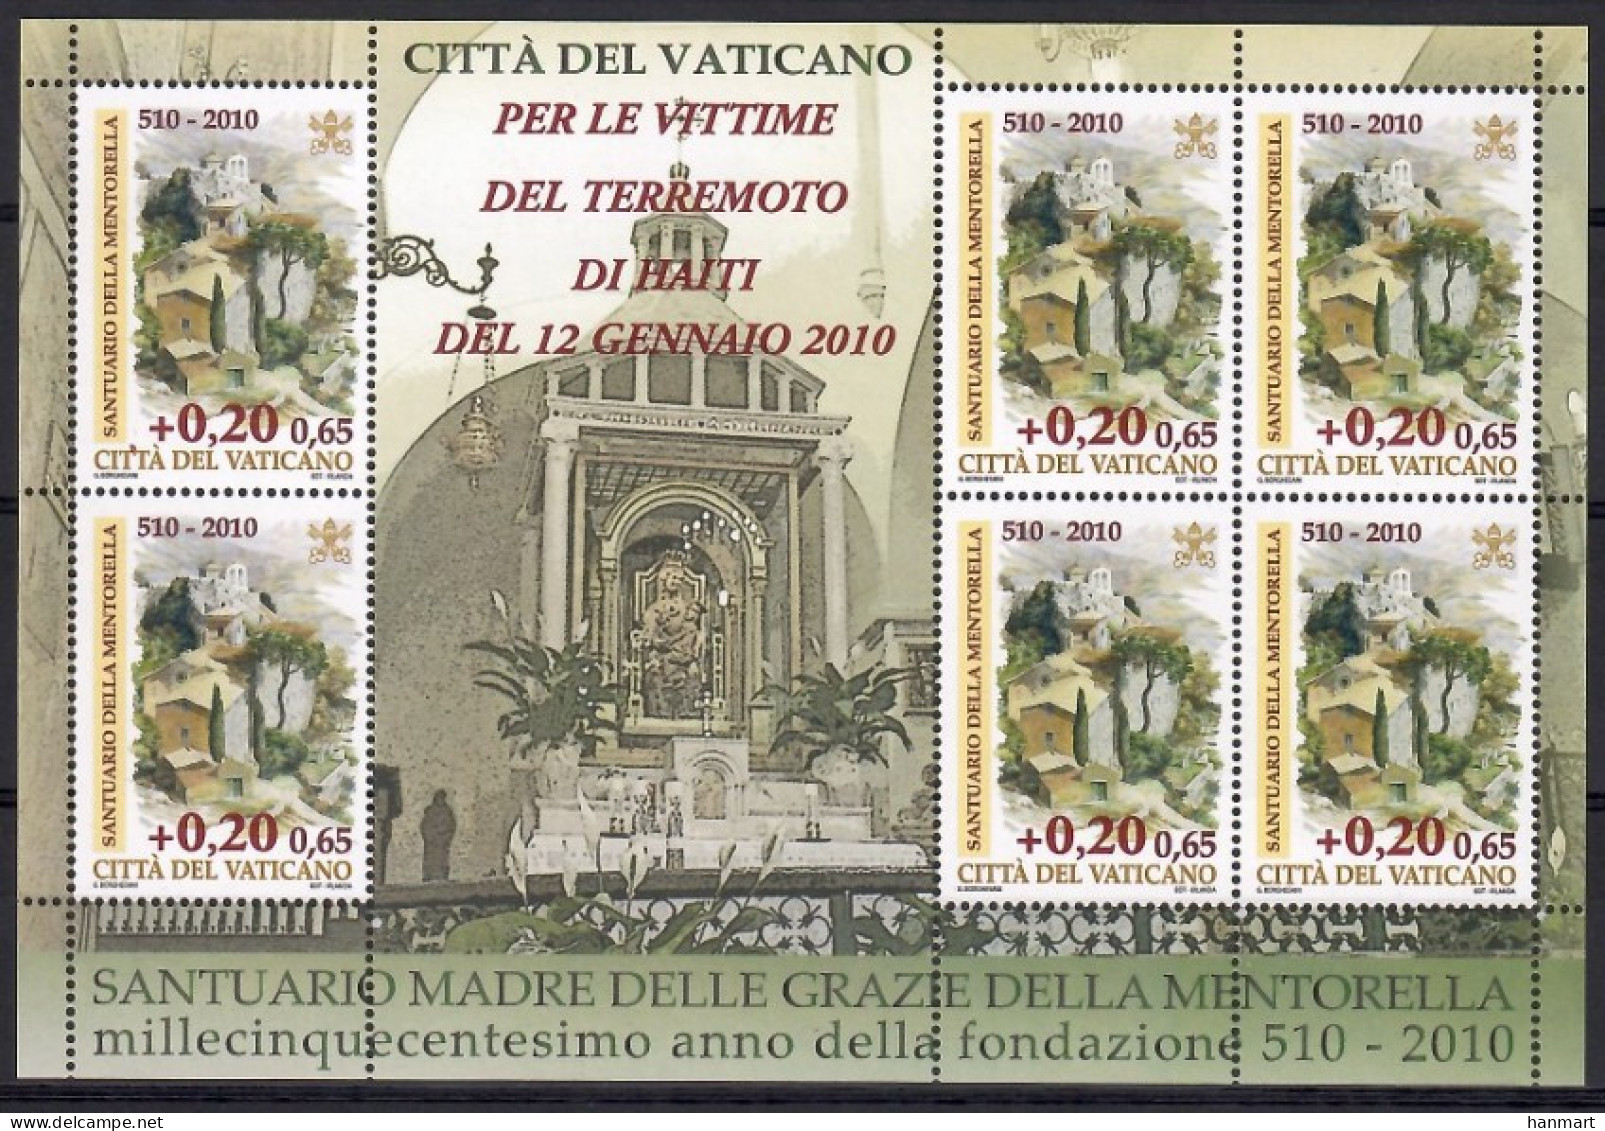 Vatican City 2010 Mi Sheet 1664 MNH  (ZE2 VTCark1664) - Christianity